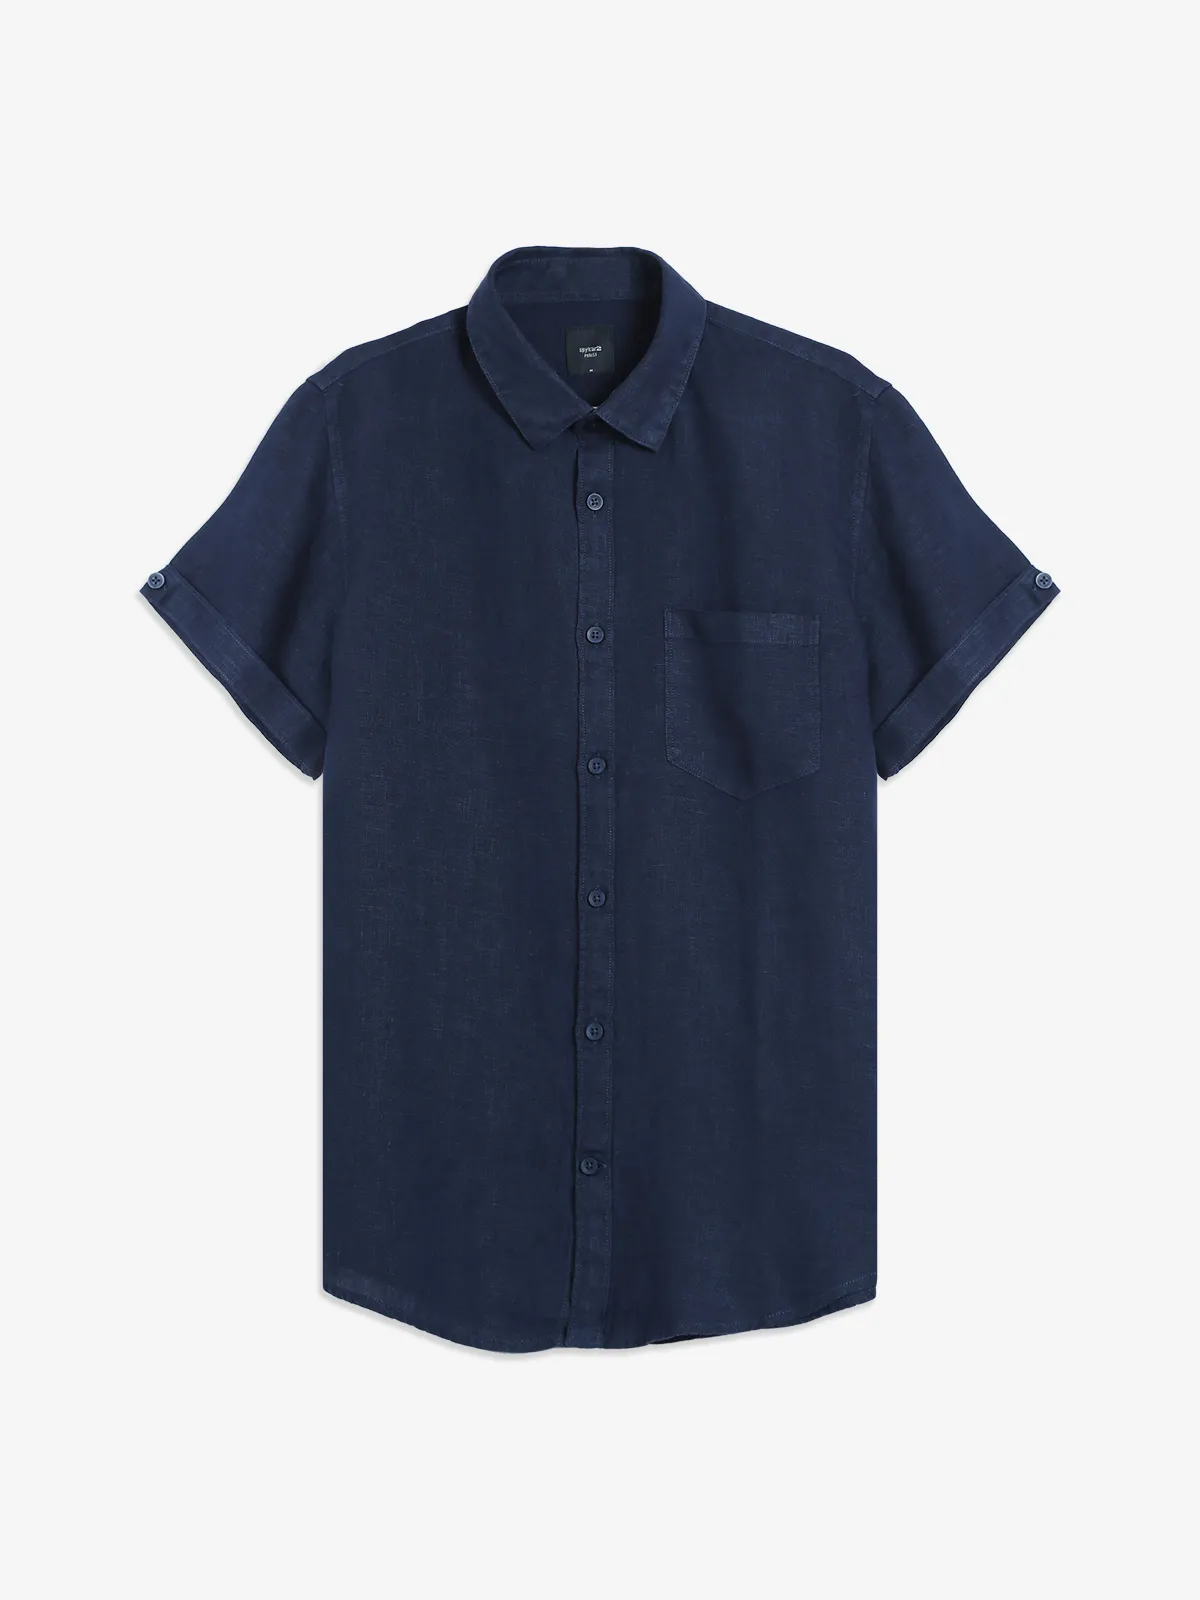 Spykar navy linen plain shirt